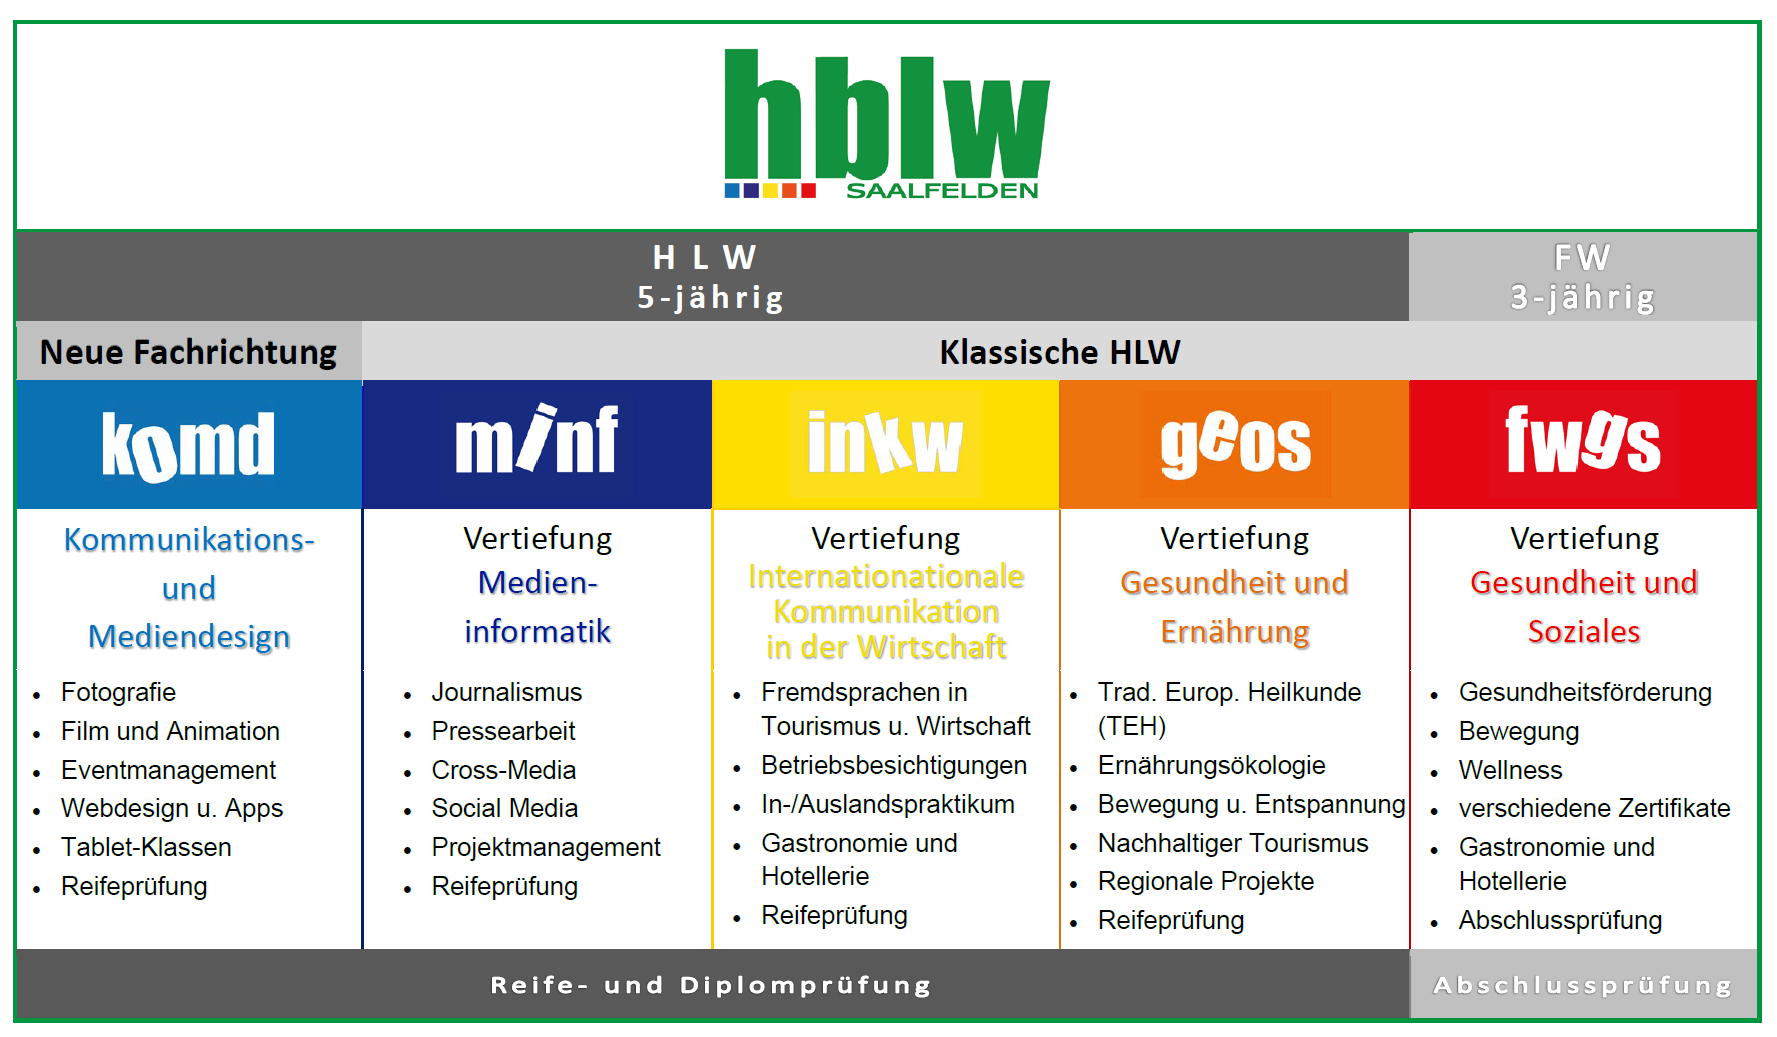 Übersicht der Ausbildungsmöglichkeiten an der HBLW Saalfelden